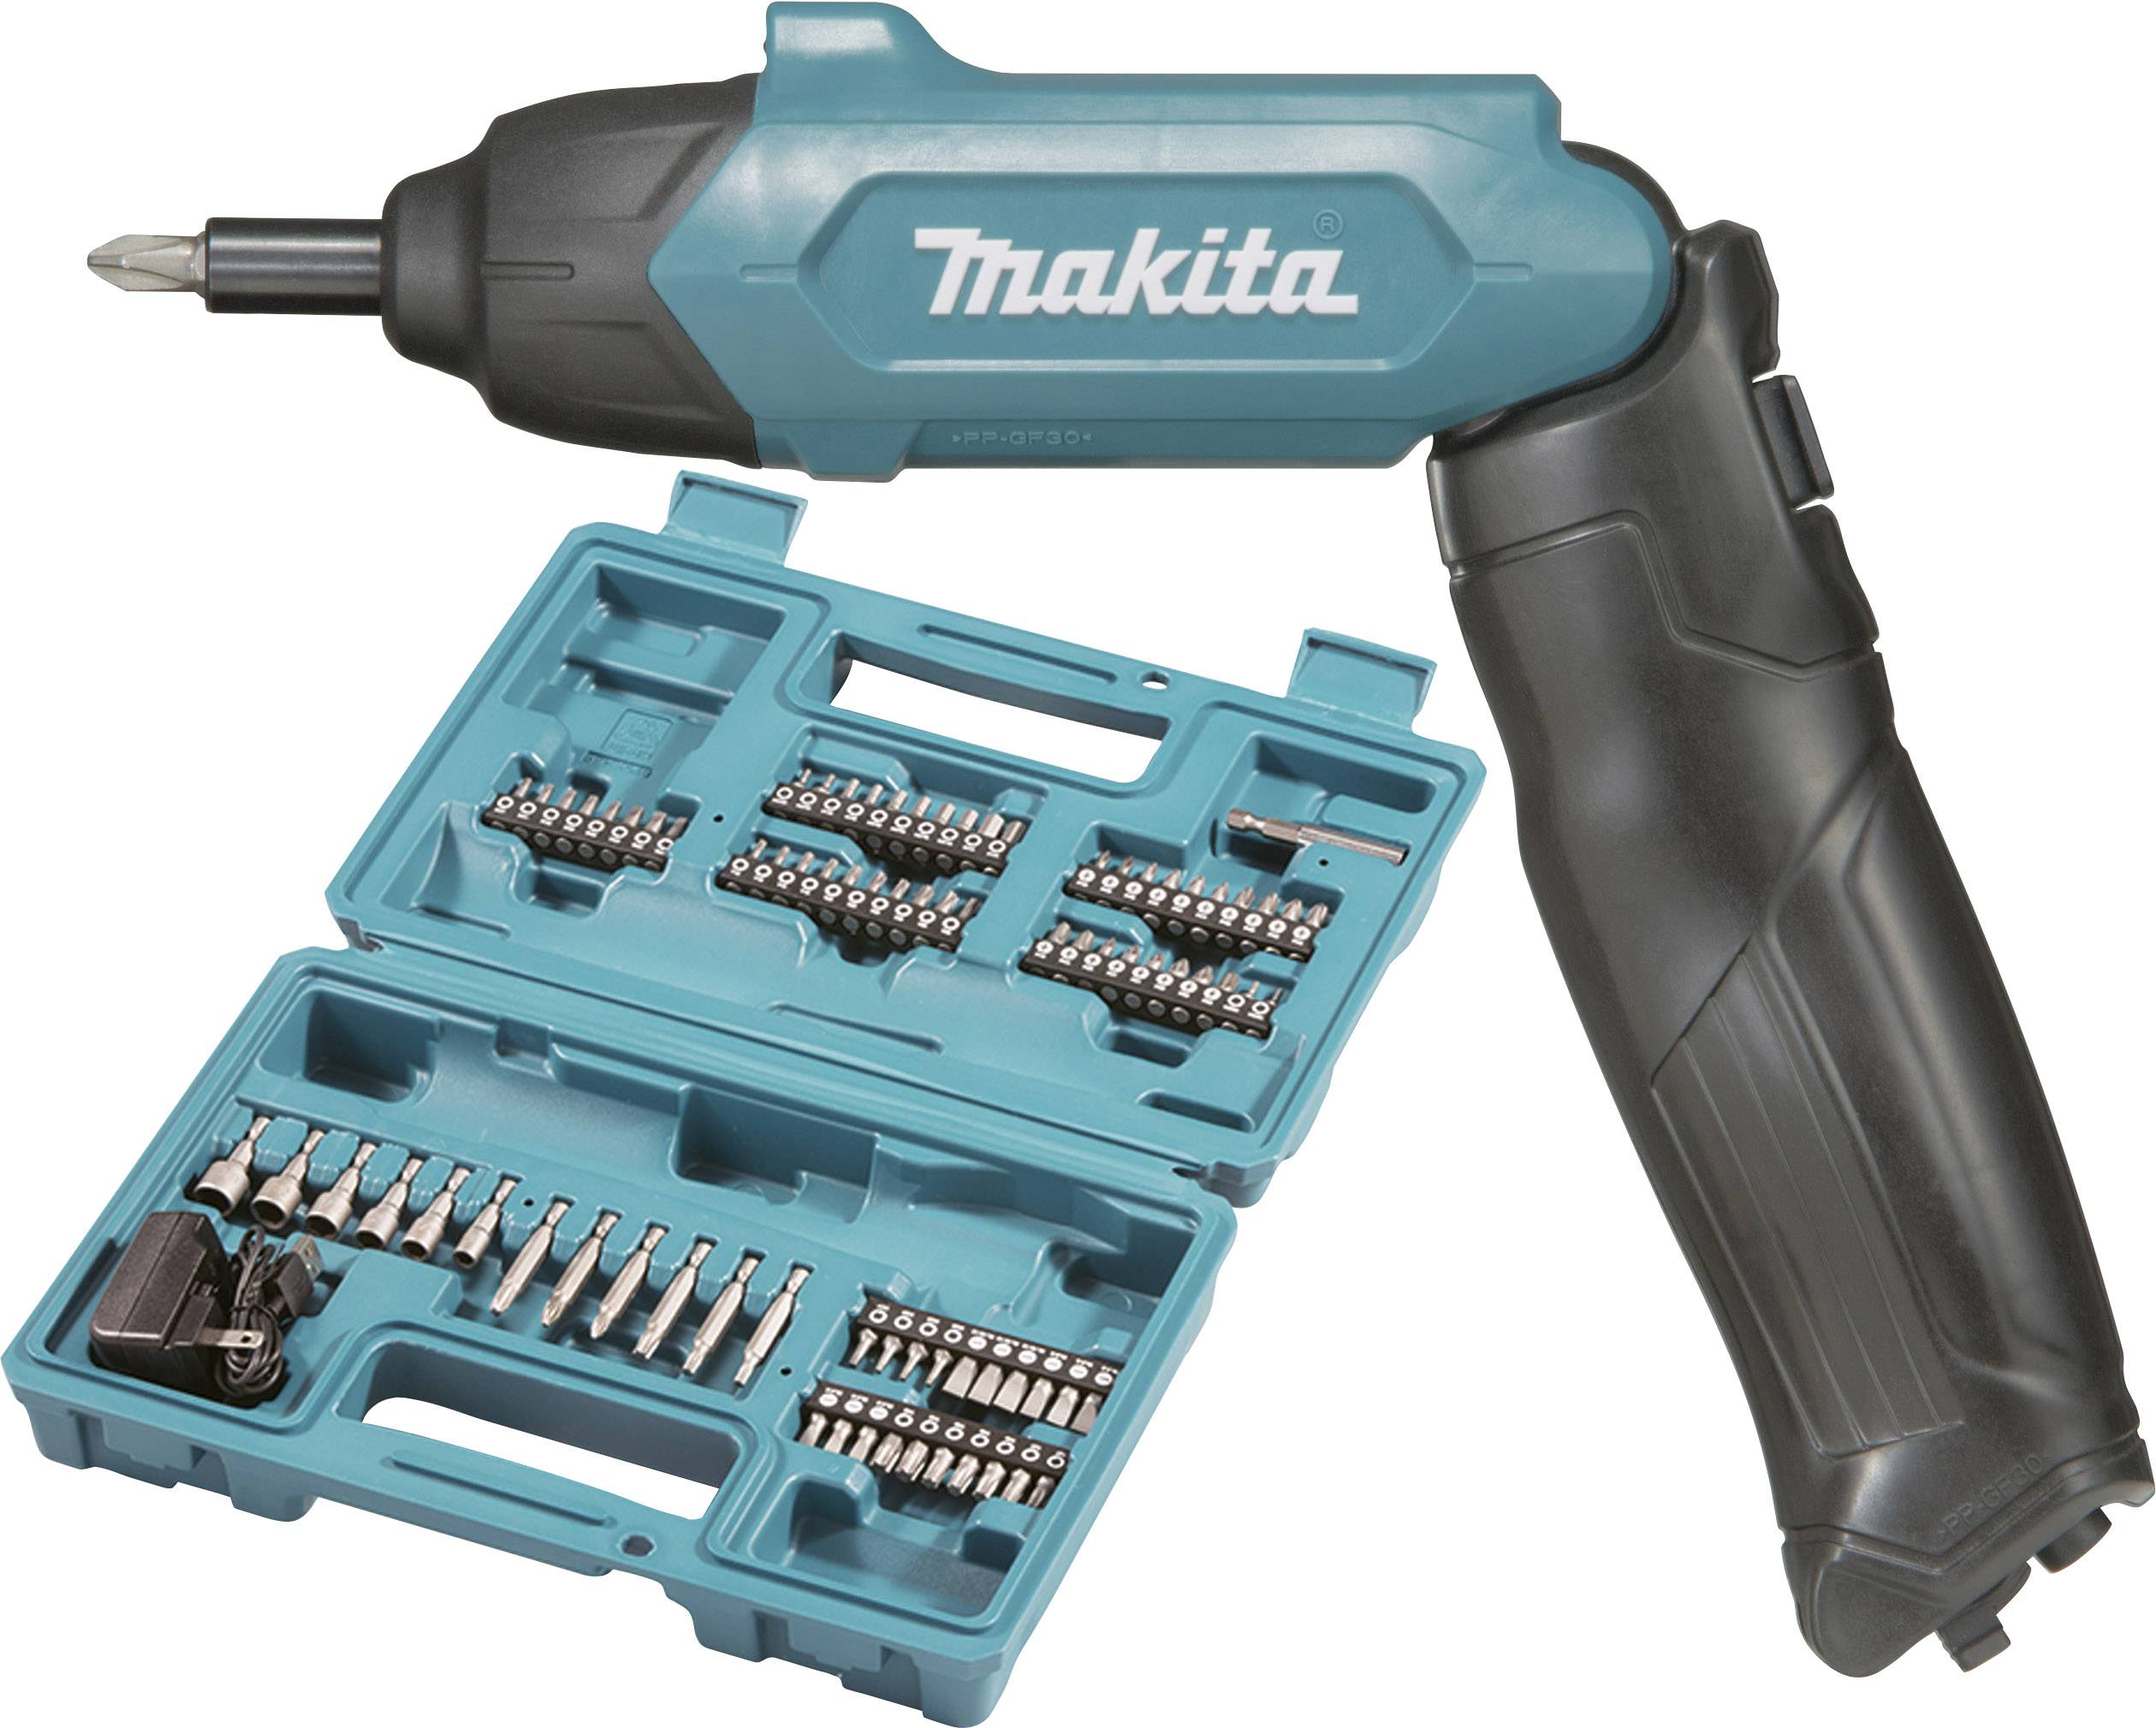 Tournevis sans fil Makita DF001DW 3.6 V 1.5 Ah Li-Ion + batterie, +  chargeur, + accessoires, + mallette - Conrad Electronic France